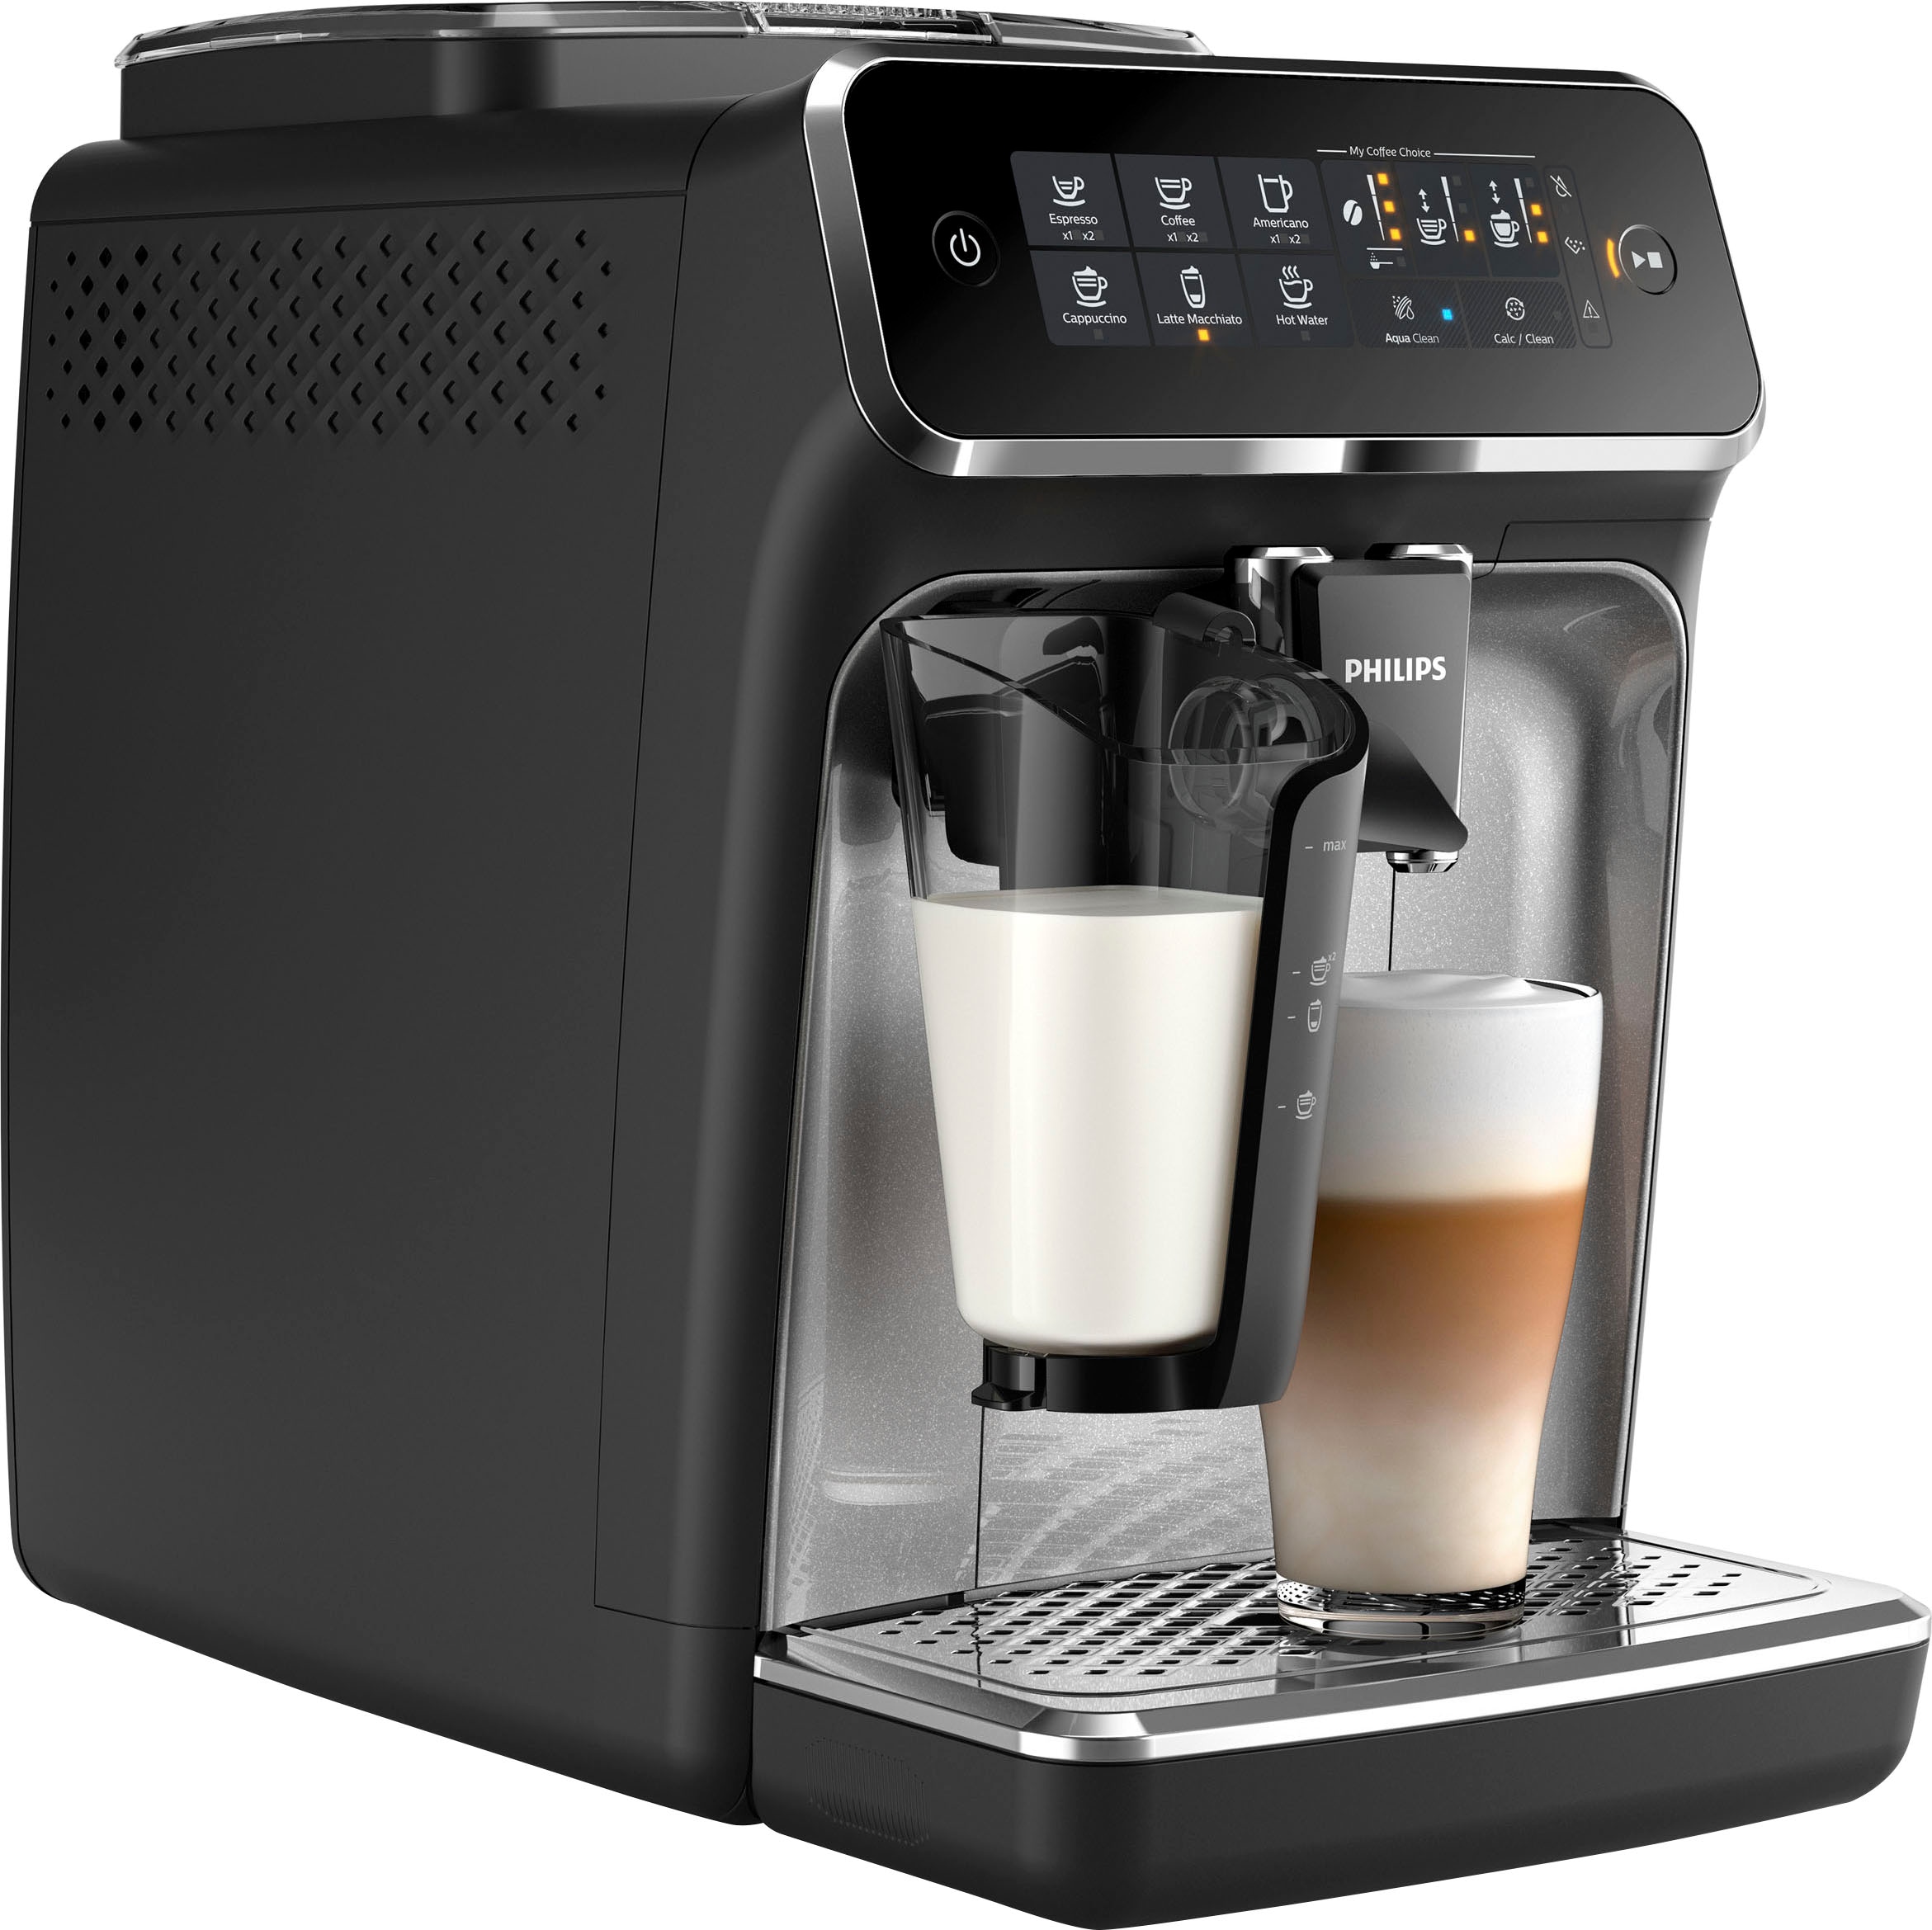 Philips Kaffeemaschinen jetzt günstig auf Rechnung bestellen | UNIVERSAL